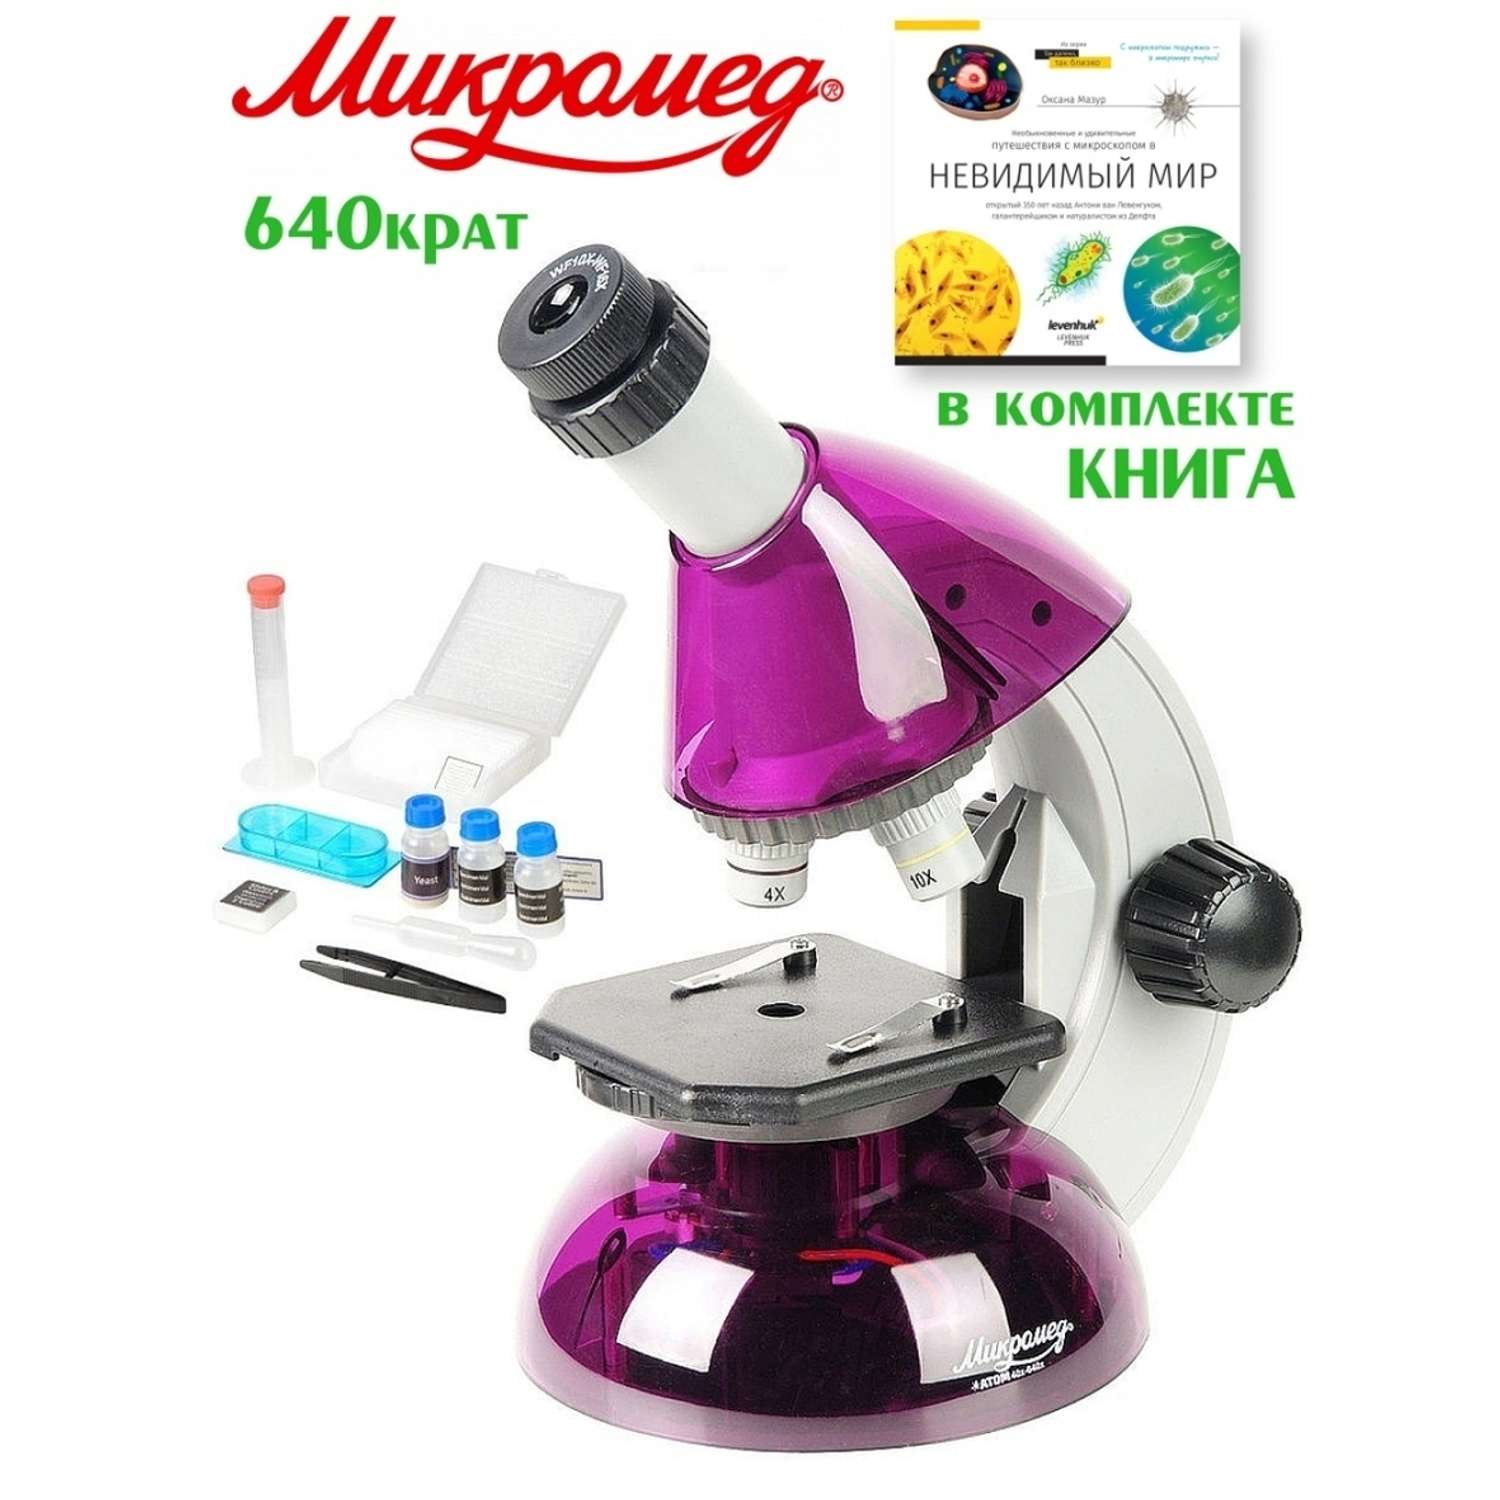 Микроскоп Микромед Атом 40x-640x с набором для опытов и книгой - фото 2